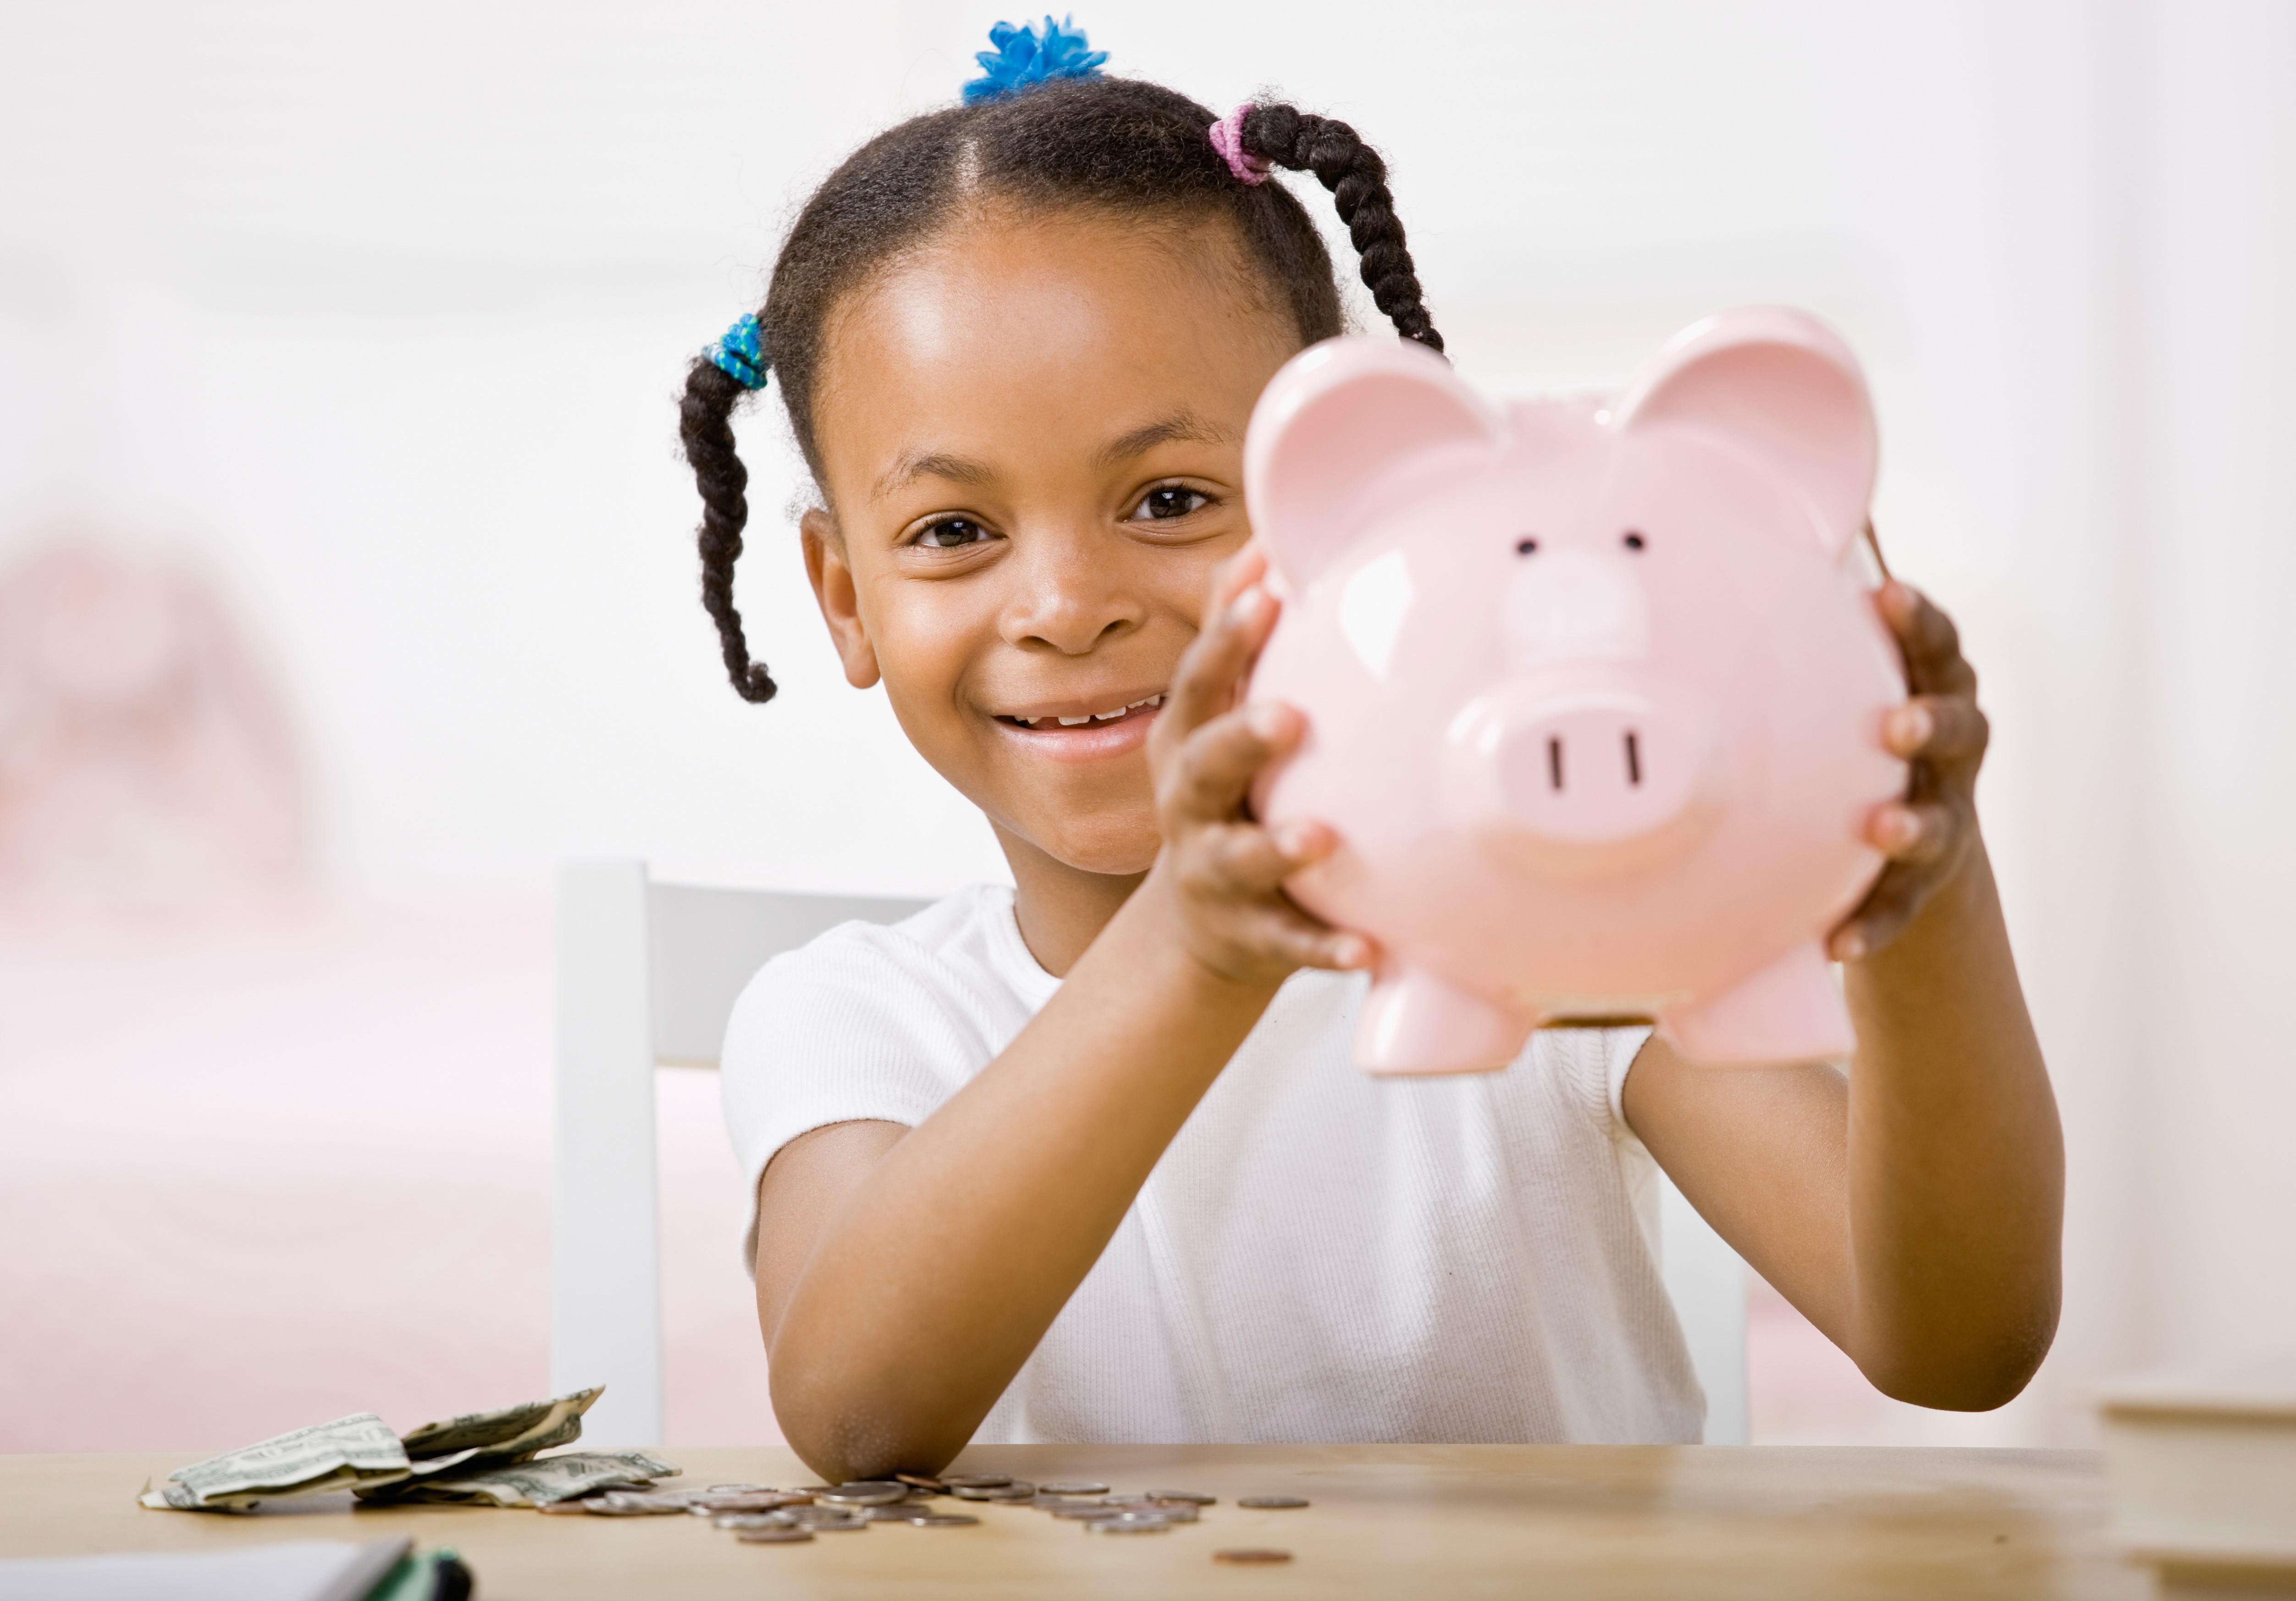 Little girl holding a piggy bank.